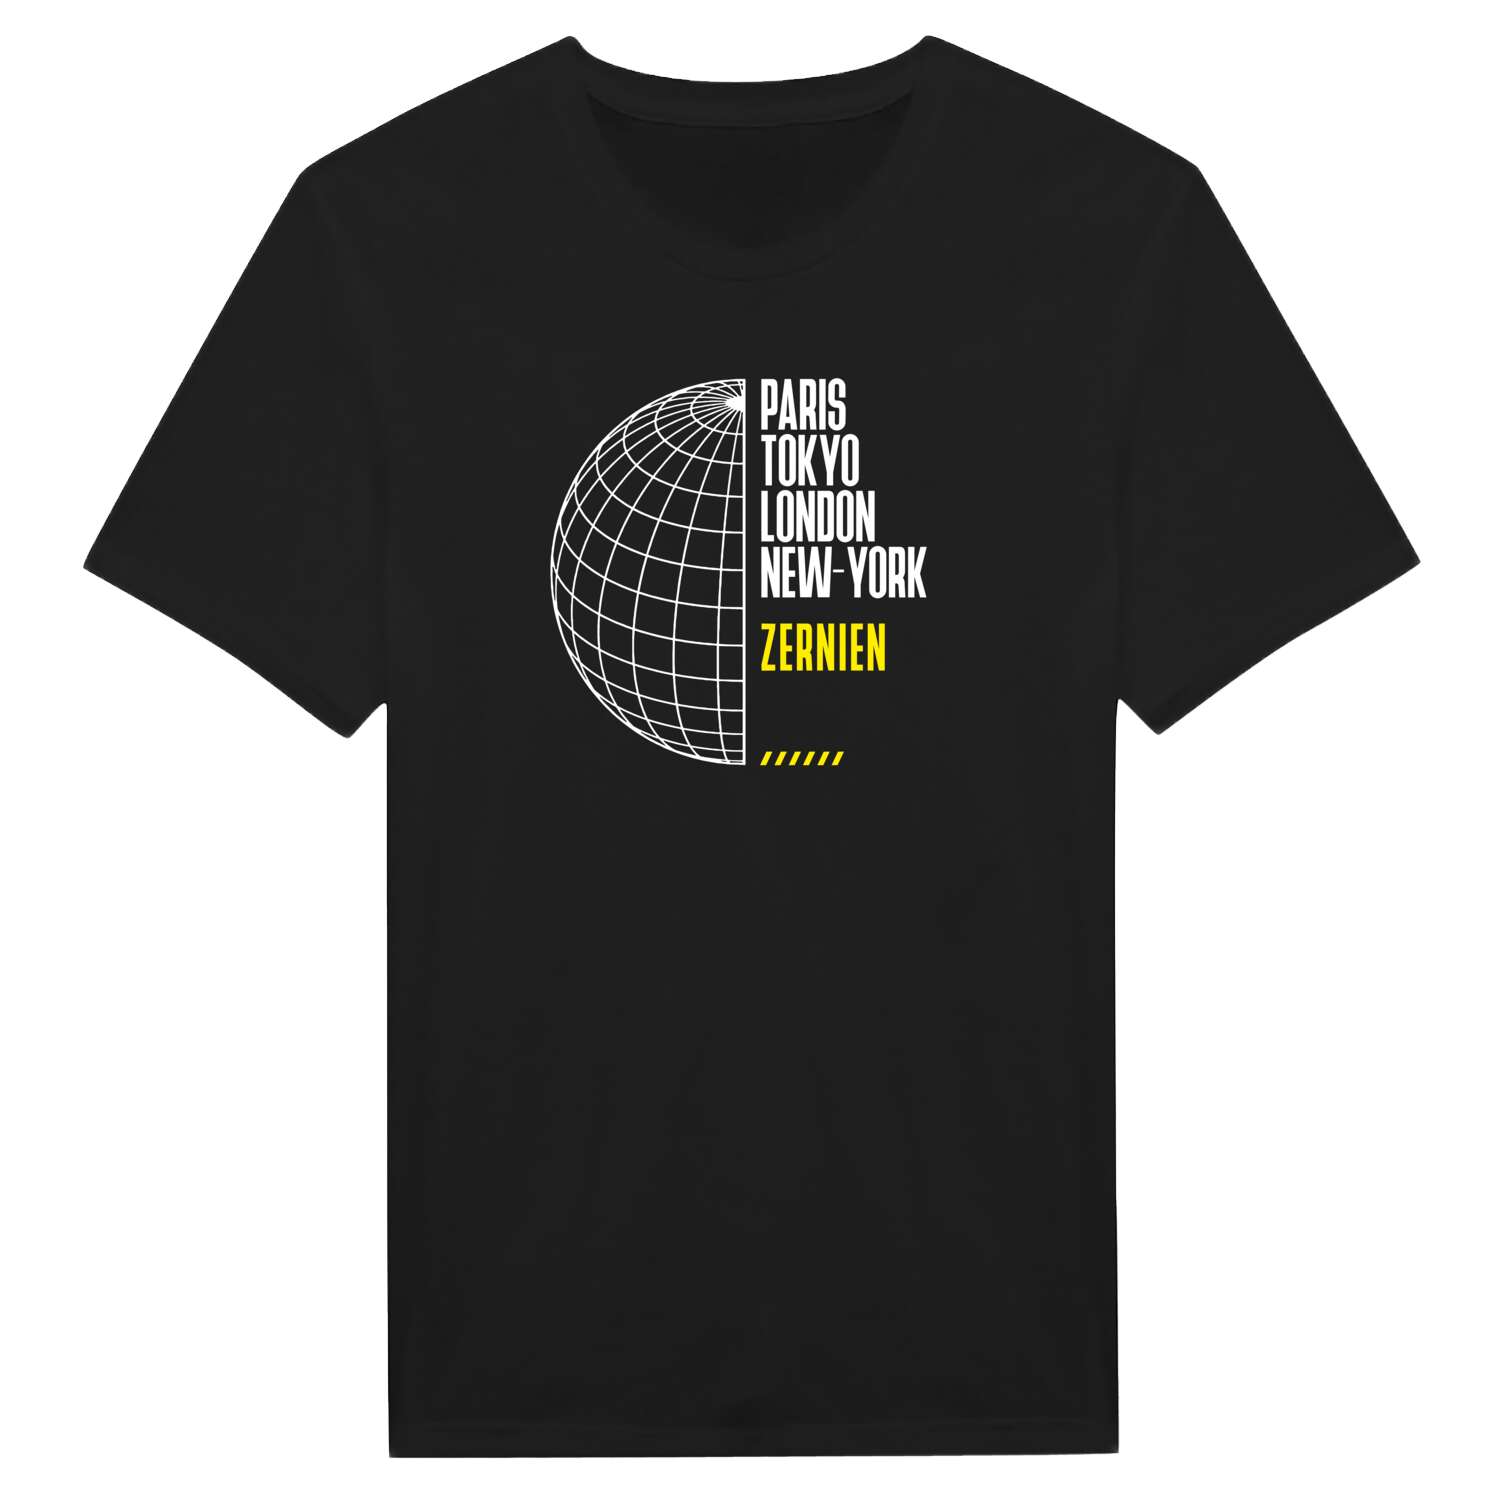 Zernien T-Shirt »Paris Tokyo London«